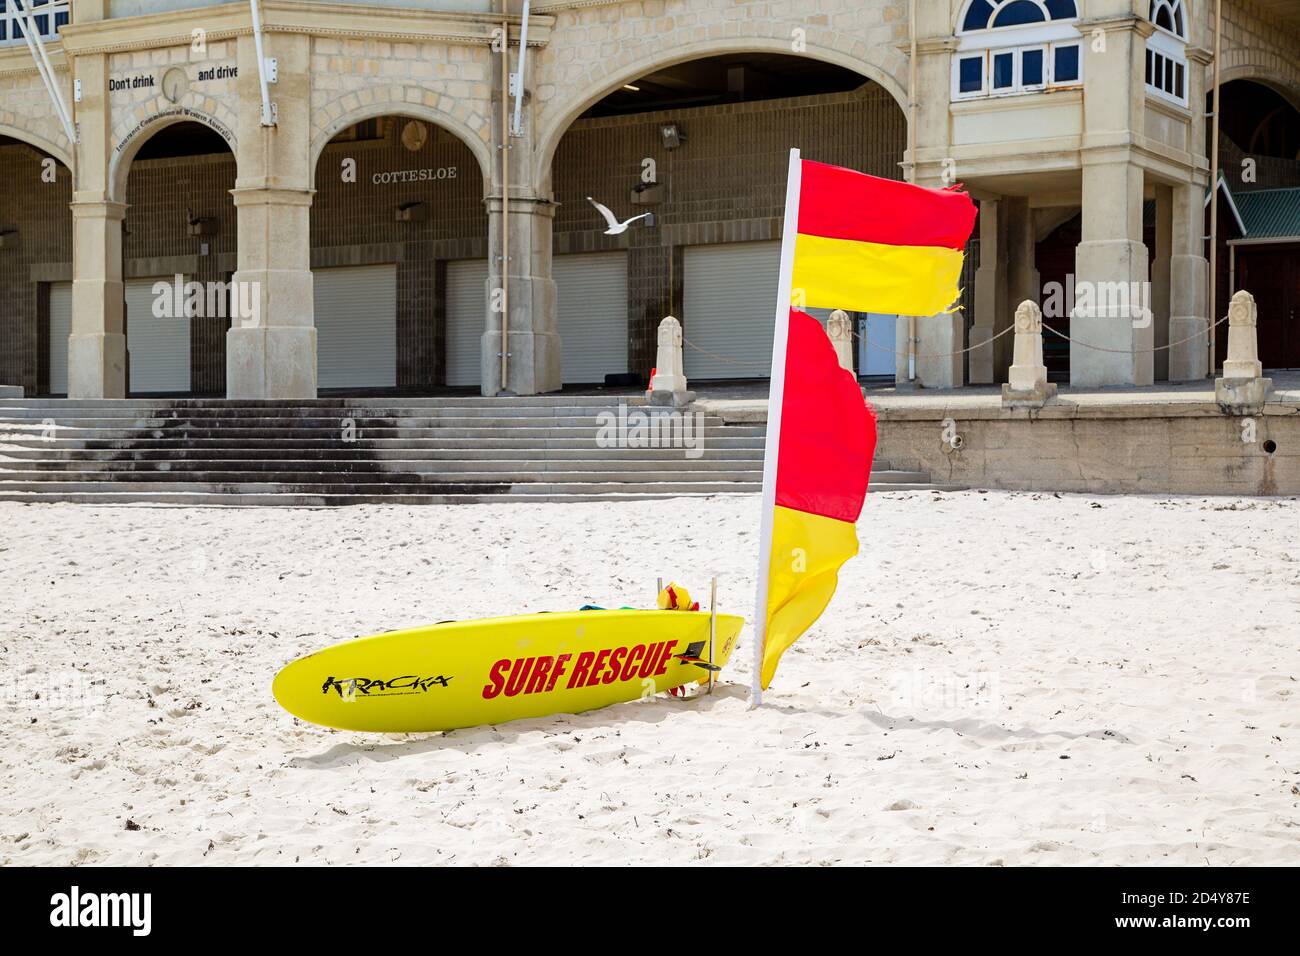 Perth, Australien - 7. Oktober 2020: Surf Rettungsschwimmer Flagge und Board am Strand außerhalb Cottesloe Indiana Tearooms Stockfoto